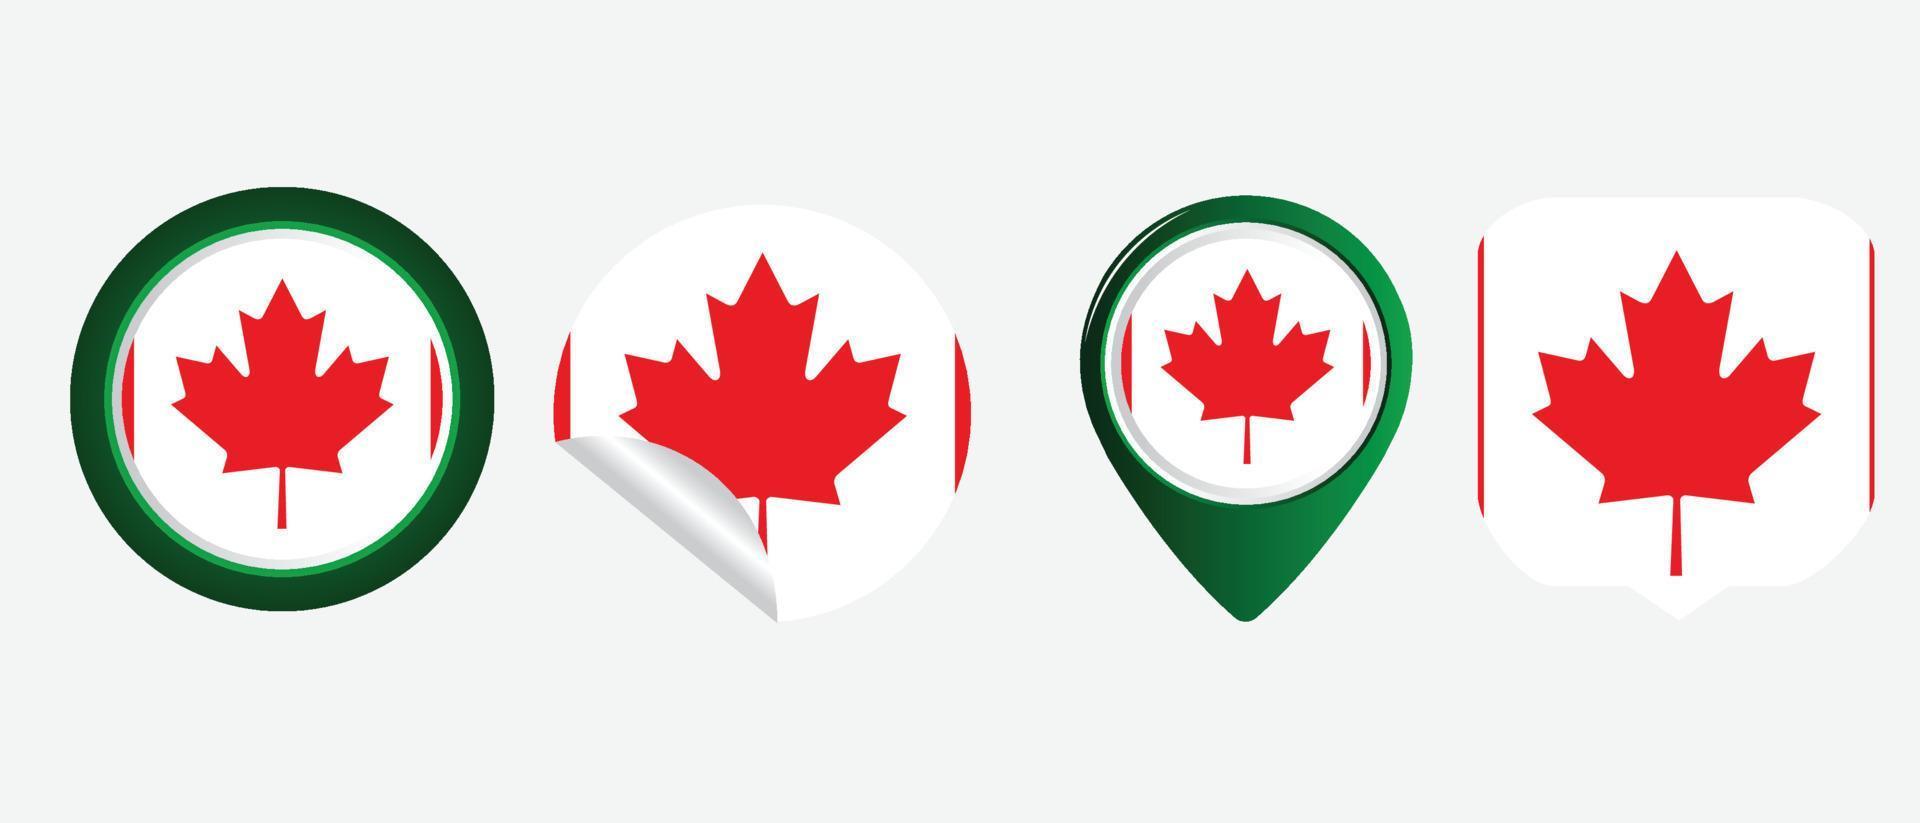 bandeira do Canada. ilustração em vetor símbolo ícone plano